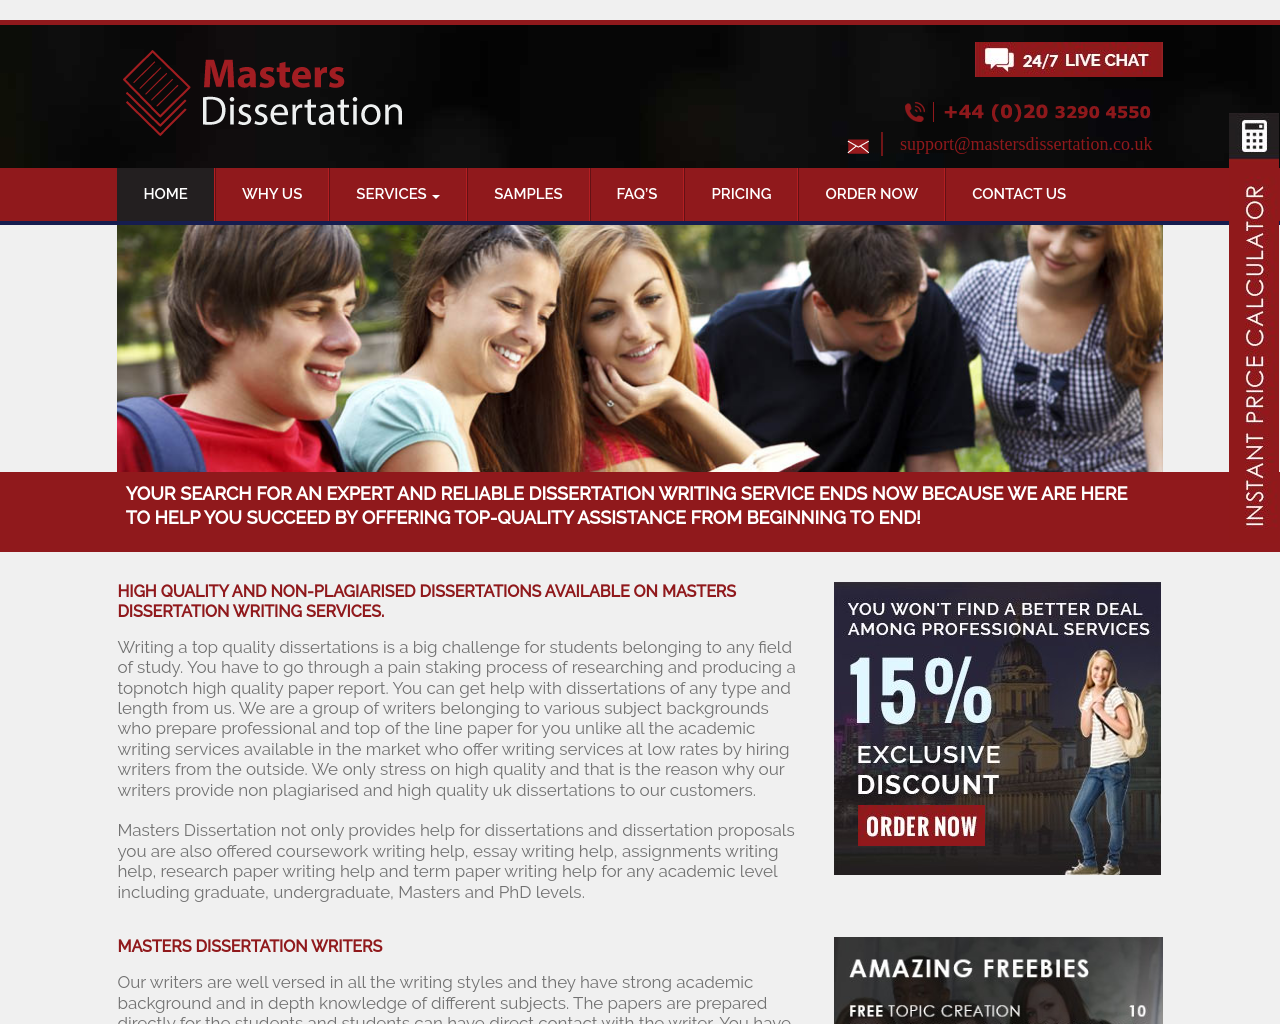 mastersdissertation.co.uk